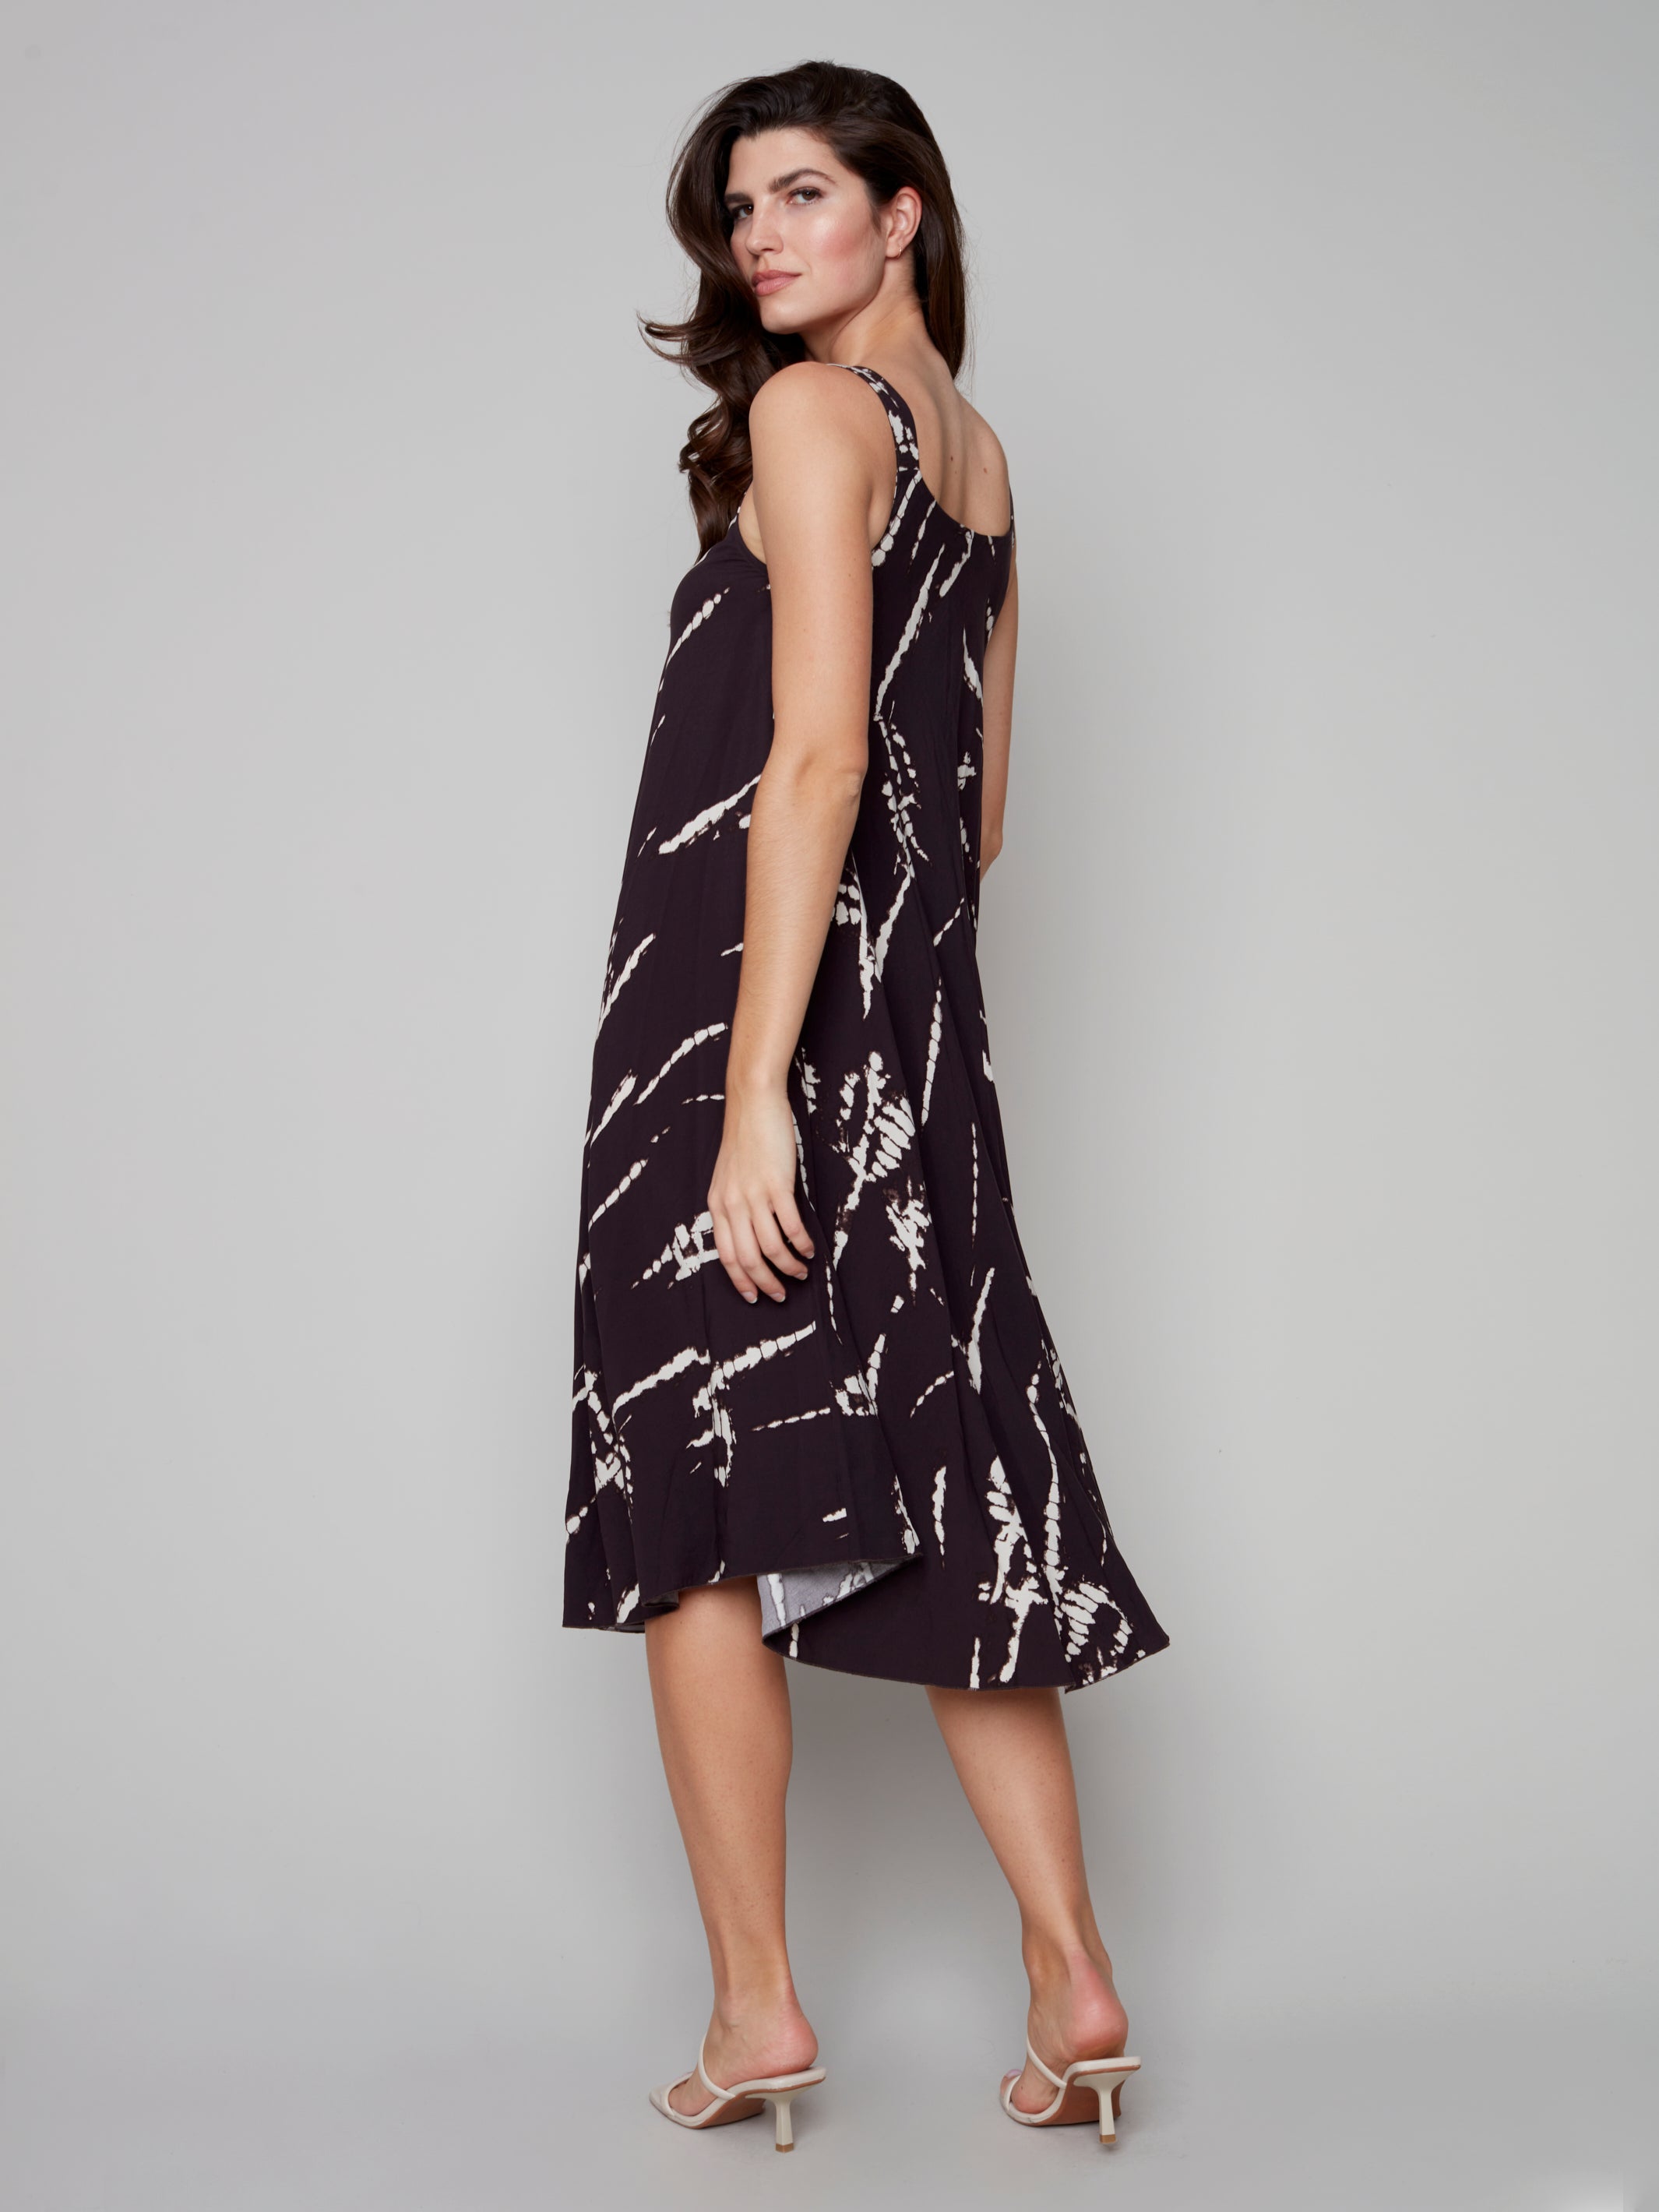 Sleeveless Printed A-Line Midi Dress by Charlie B